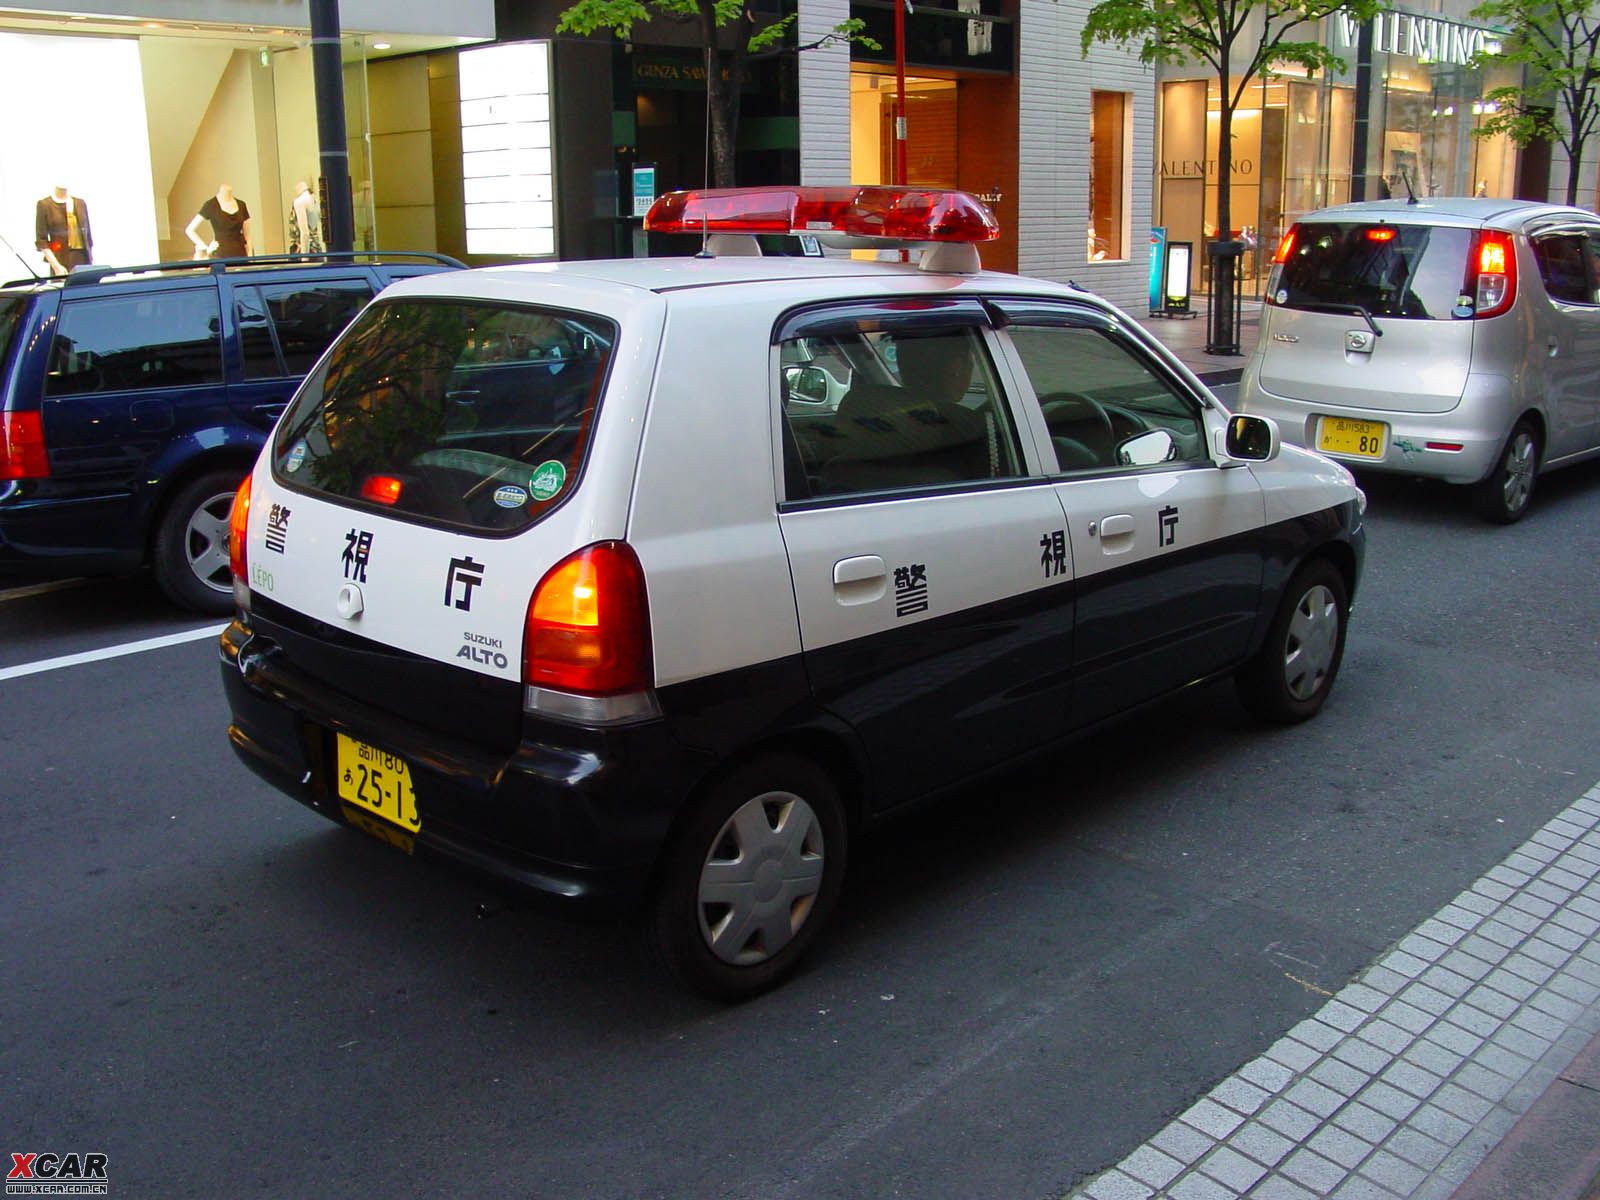 东京的警察也挺低调的,最新款奥拓哦,我日.日本人的确小车多啊.